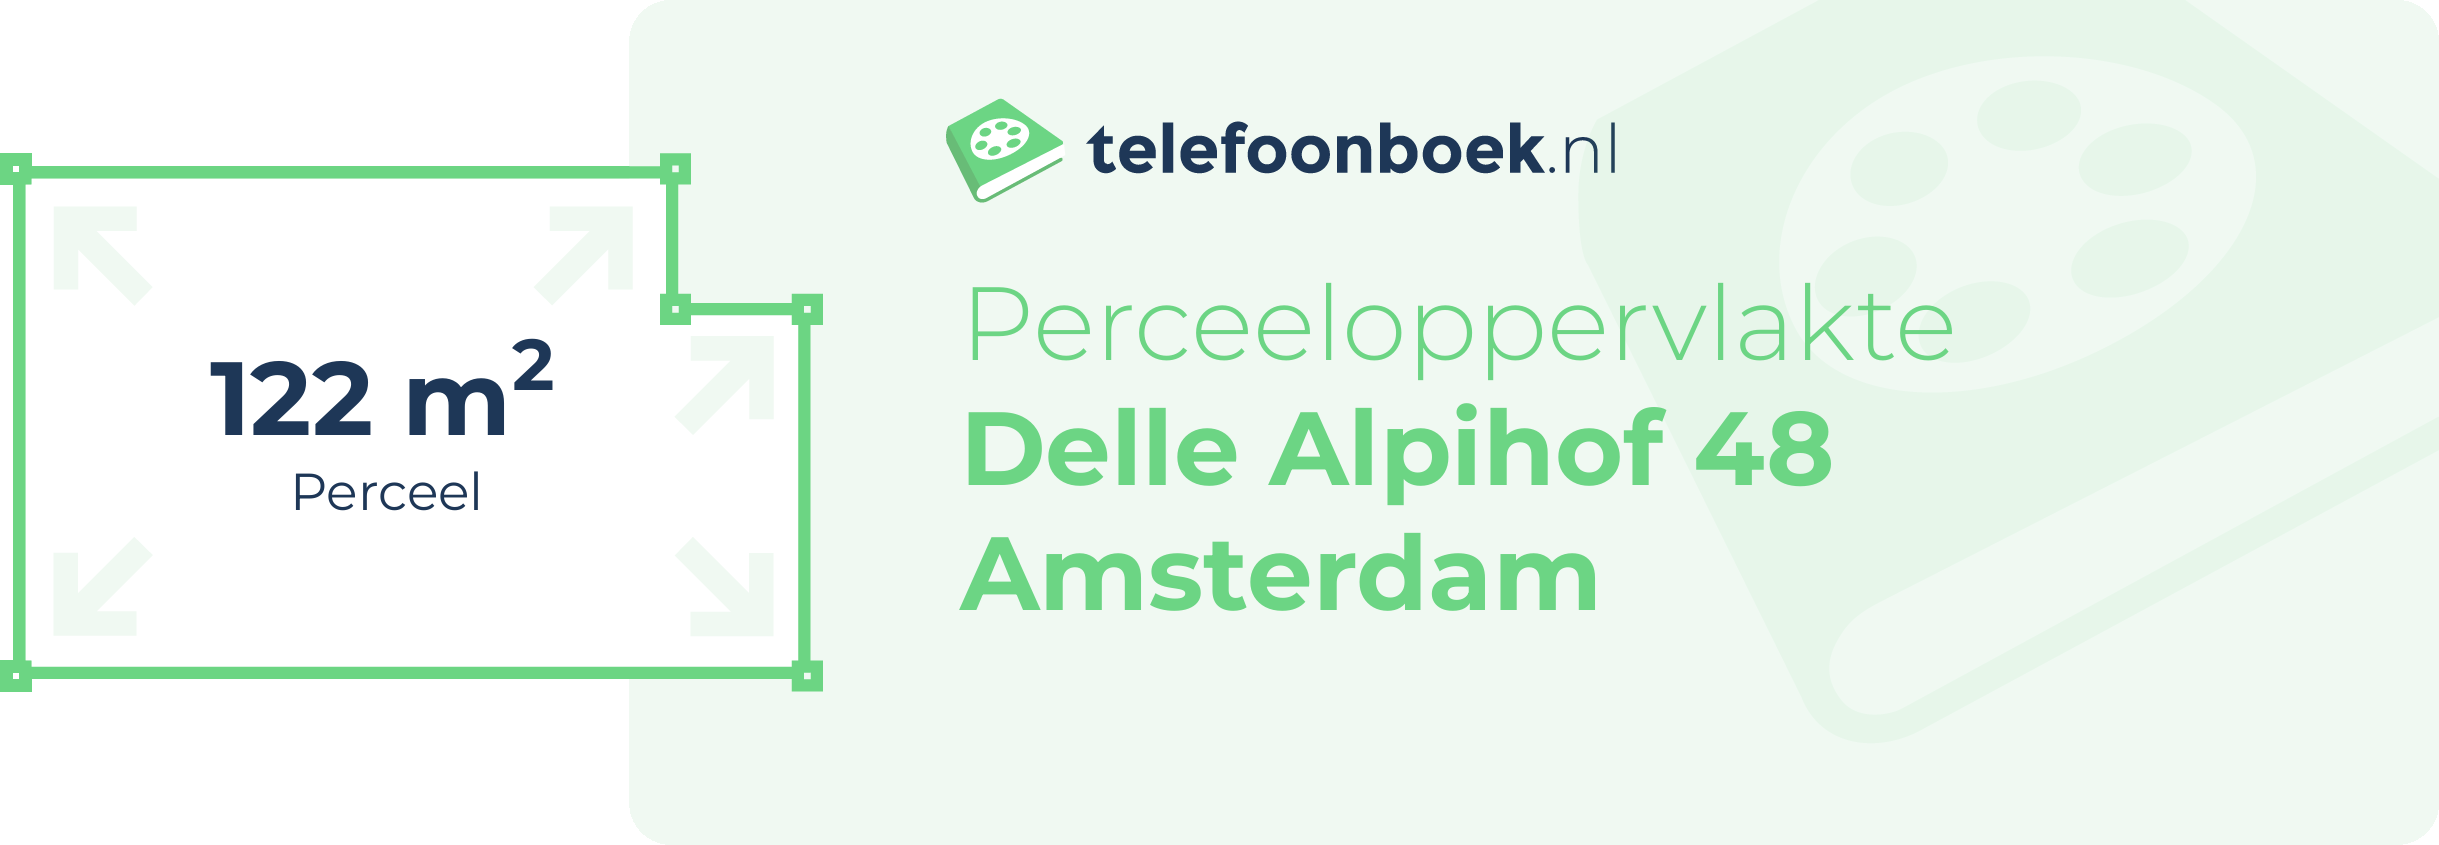 Perceeloppervlakte Delle Alpihof 48 Amsterdam